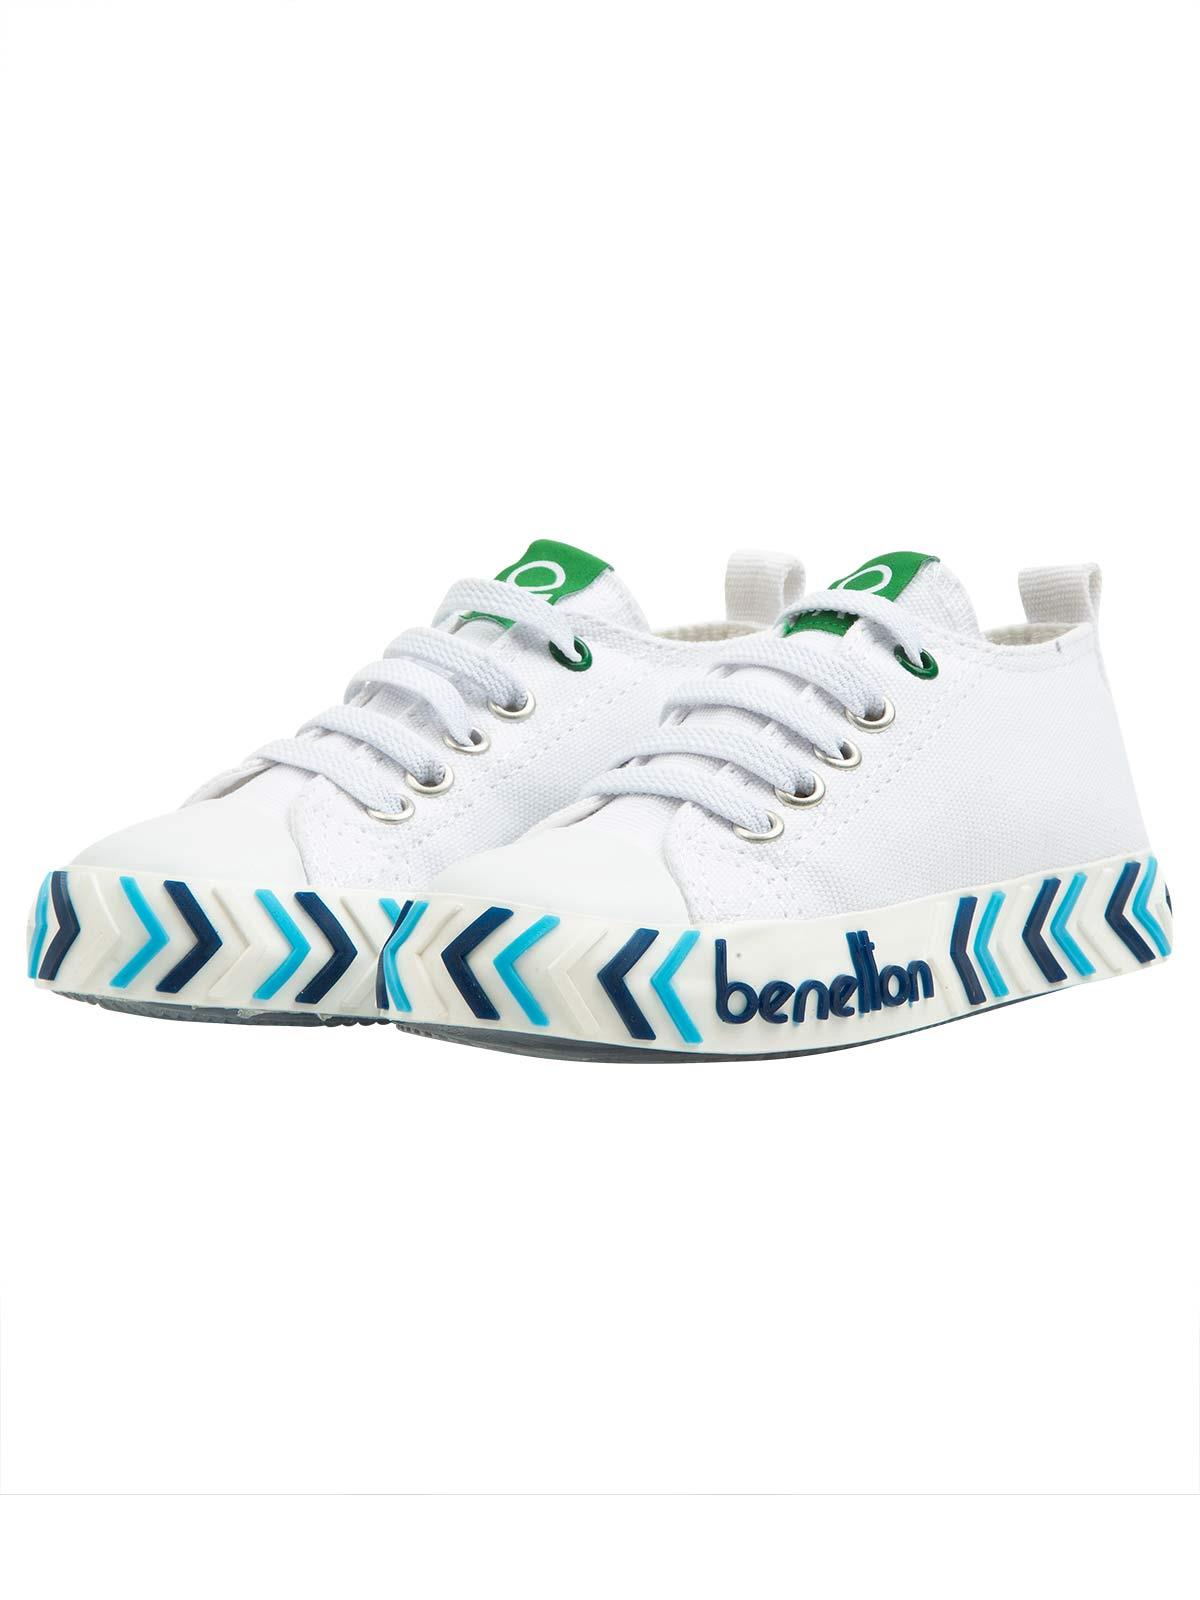 Benetton Erkek Çocuk Spor Ayakkabı 26-30 Numara Buz Mavi